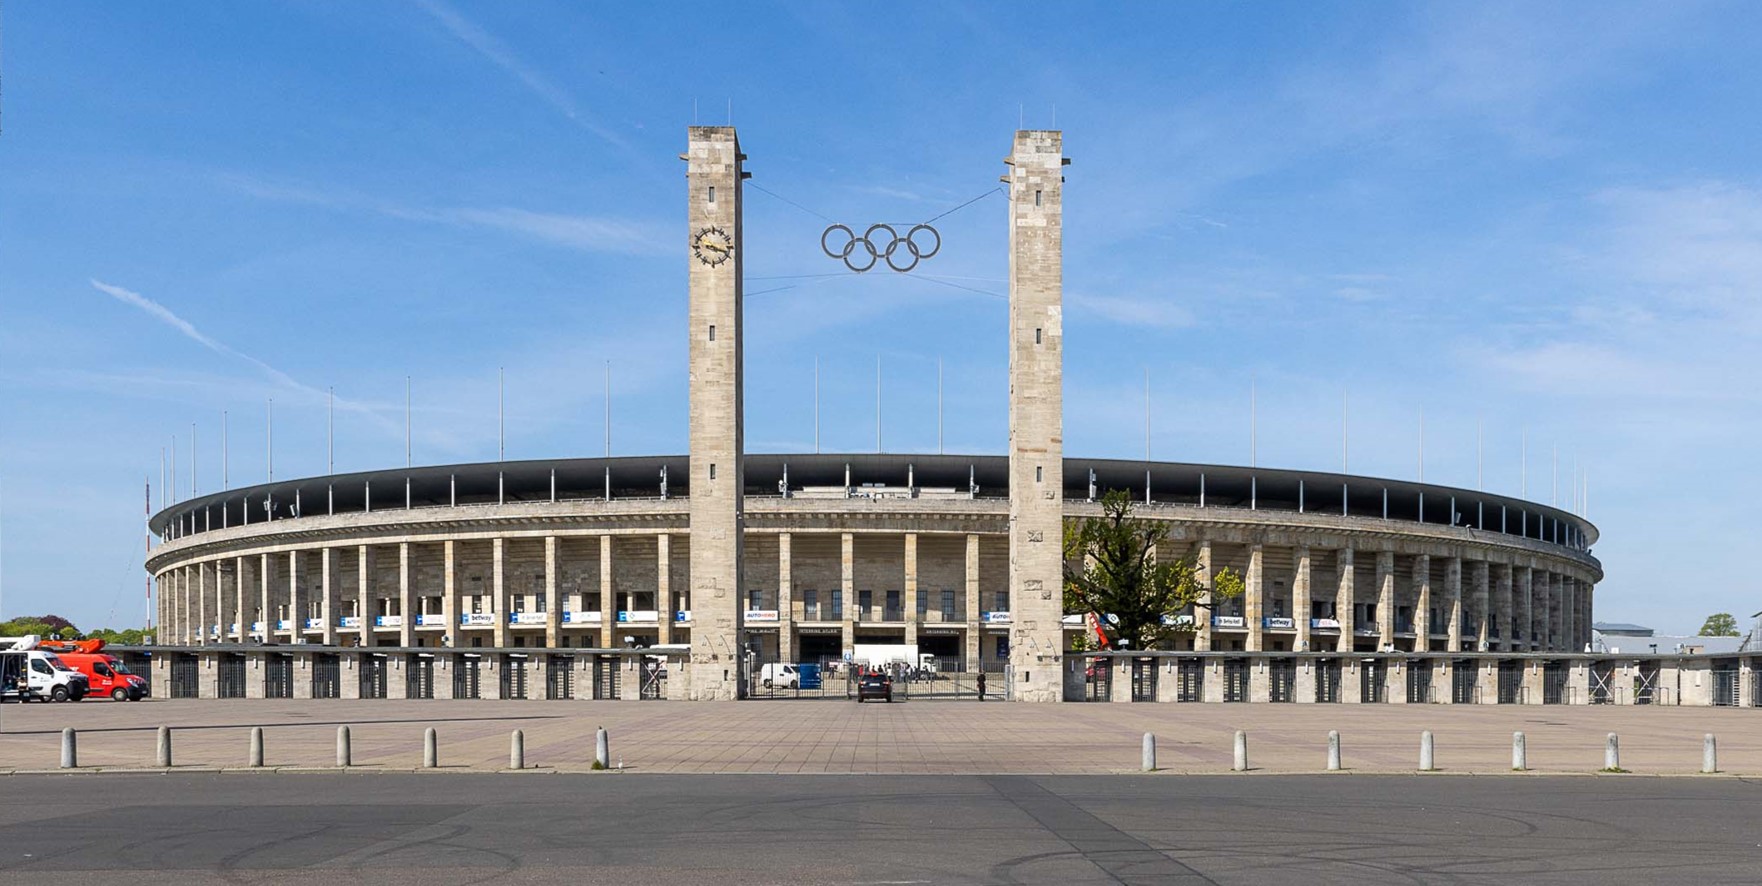 Ein Fußballstadion, davor zwei hohe Türme mit olympischen Ringen, der Himmel ist blau